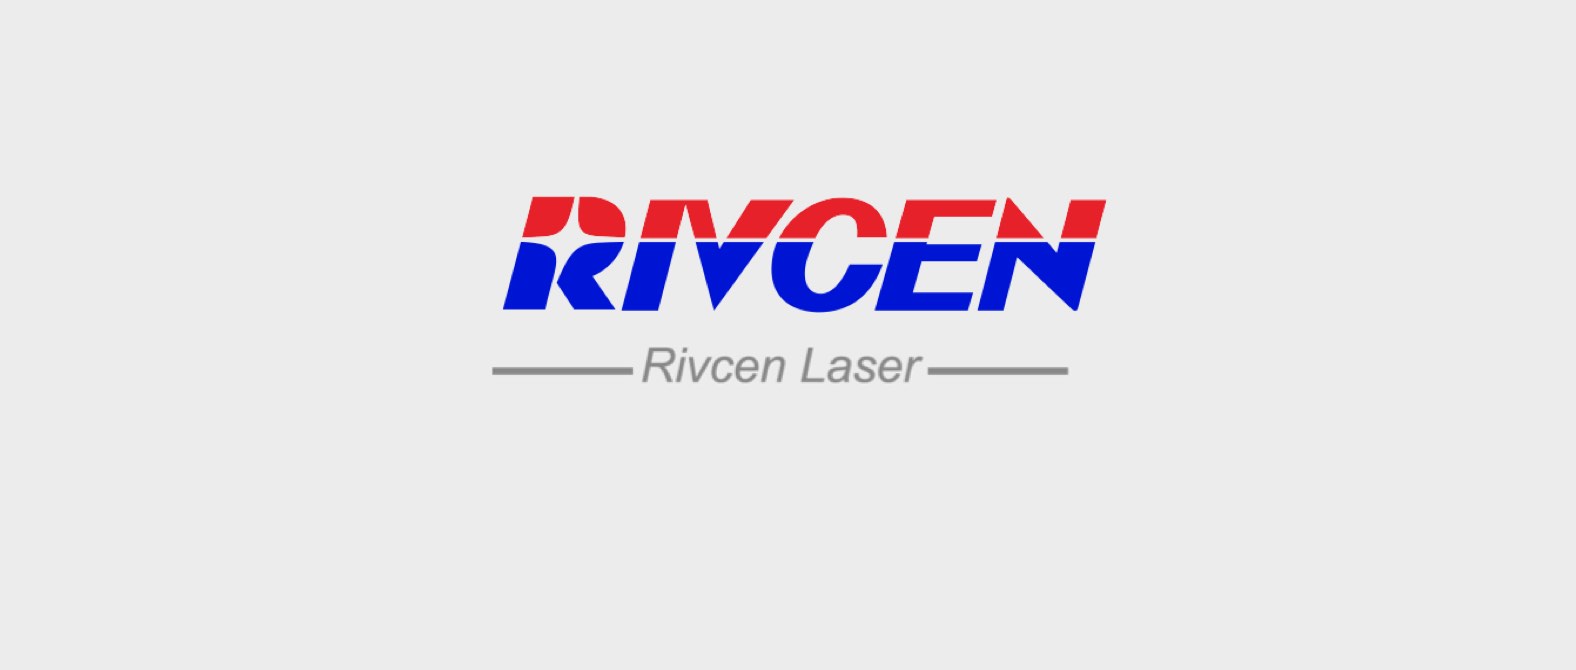 RIVCEN established Rivcen laser division.jpg